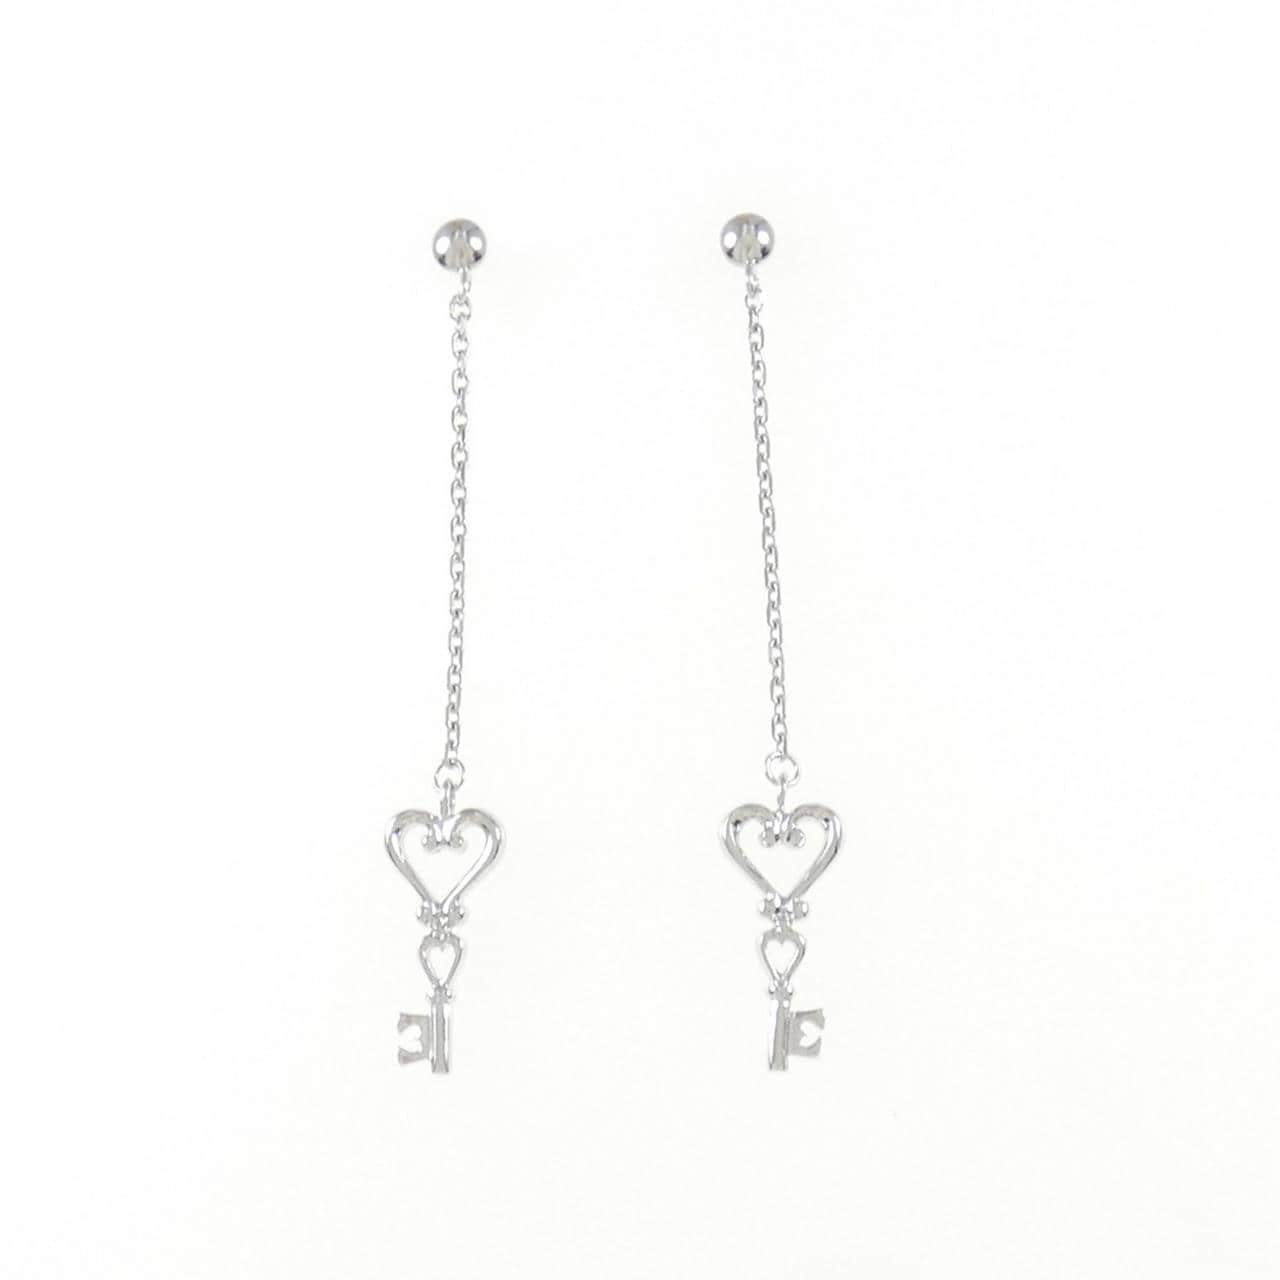 K18WG heart x key earrings